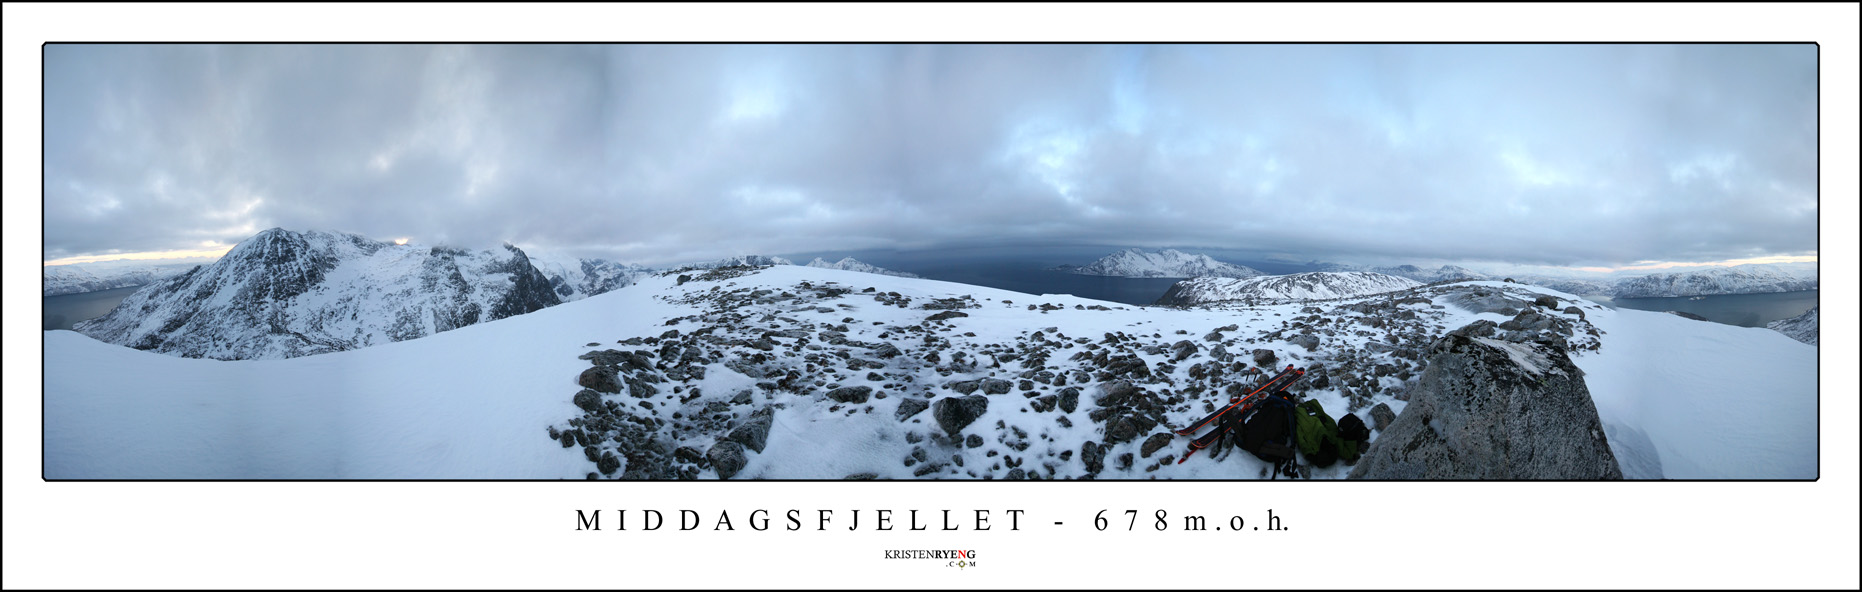 Hjemmeside - Middagsfjellet.jpg - Panorama fra Middagsfjellet 26.01.09